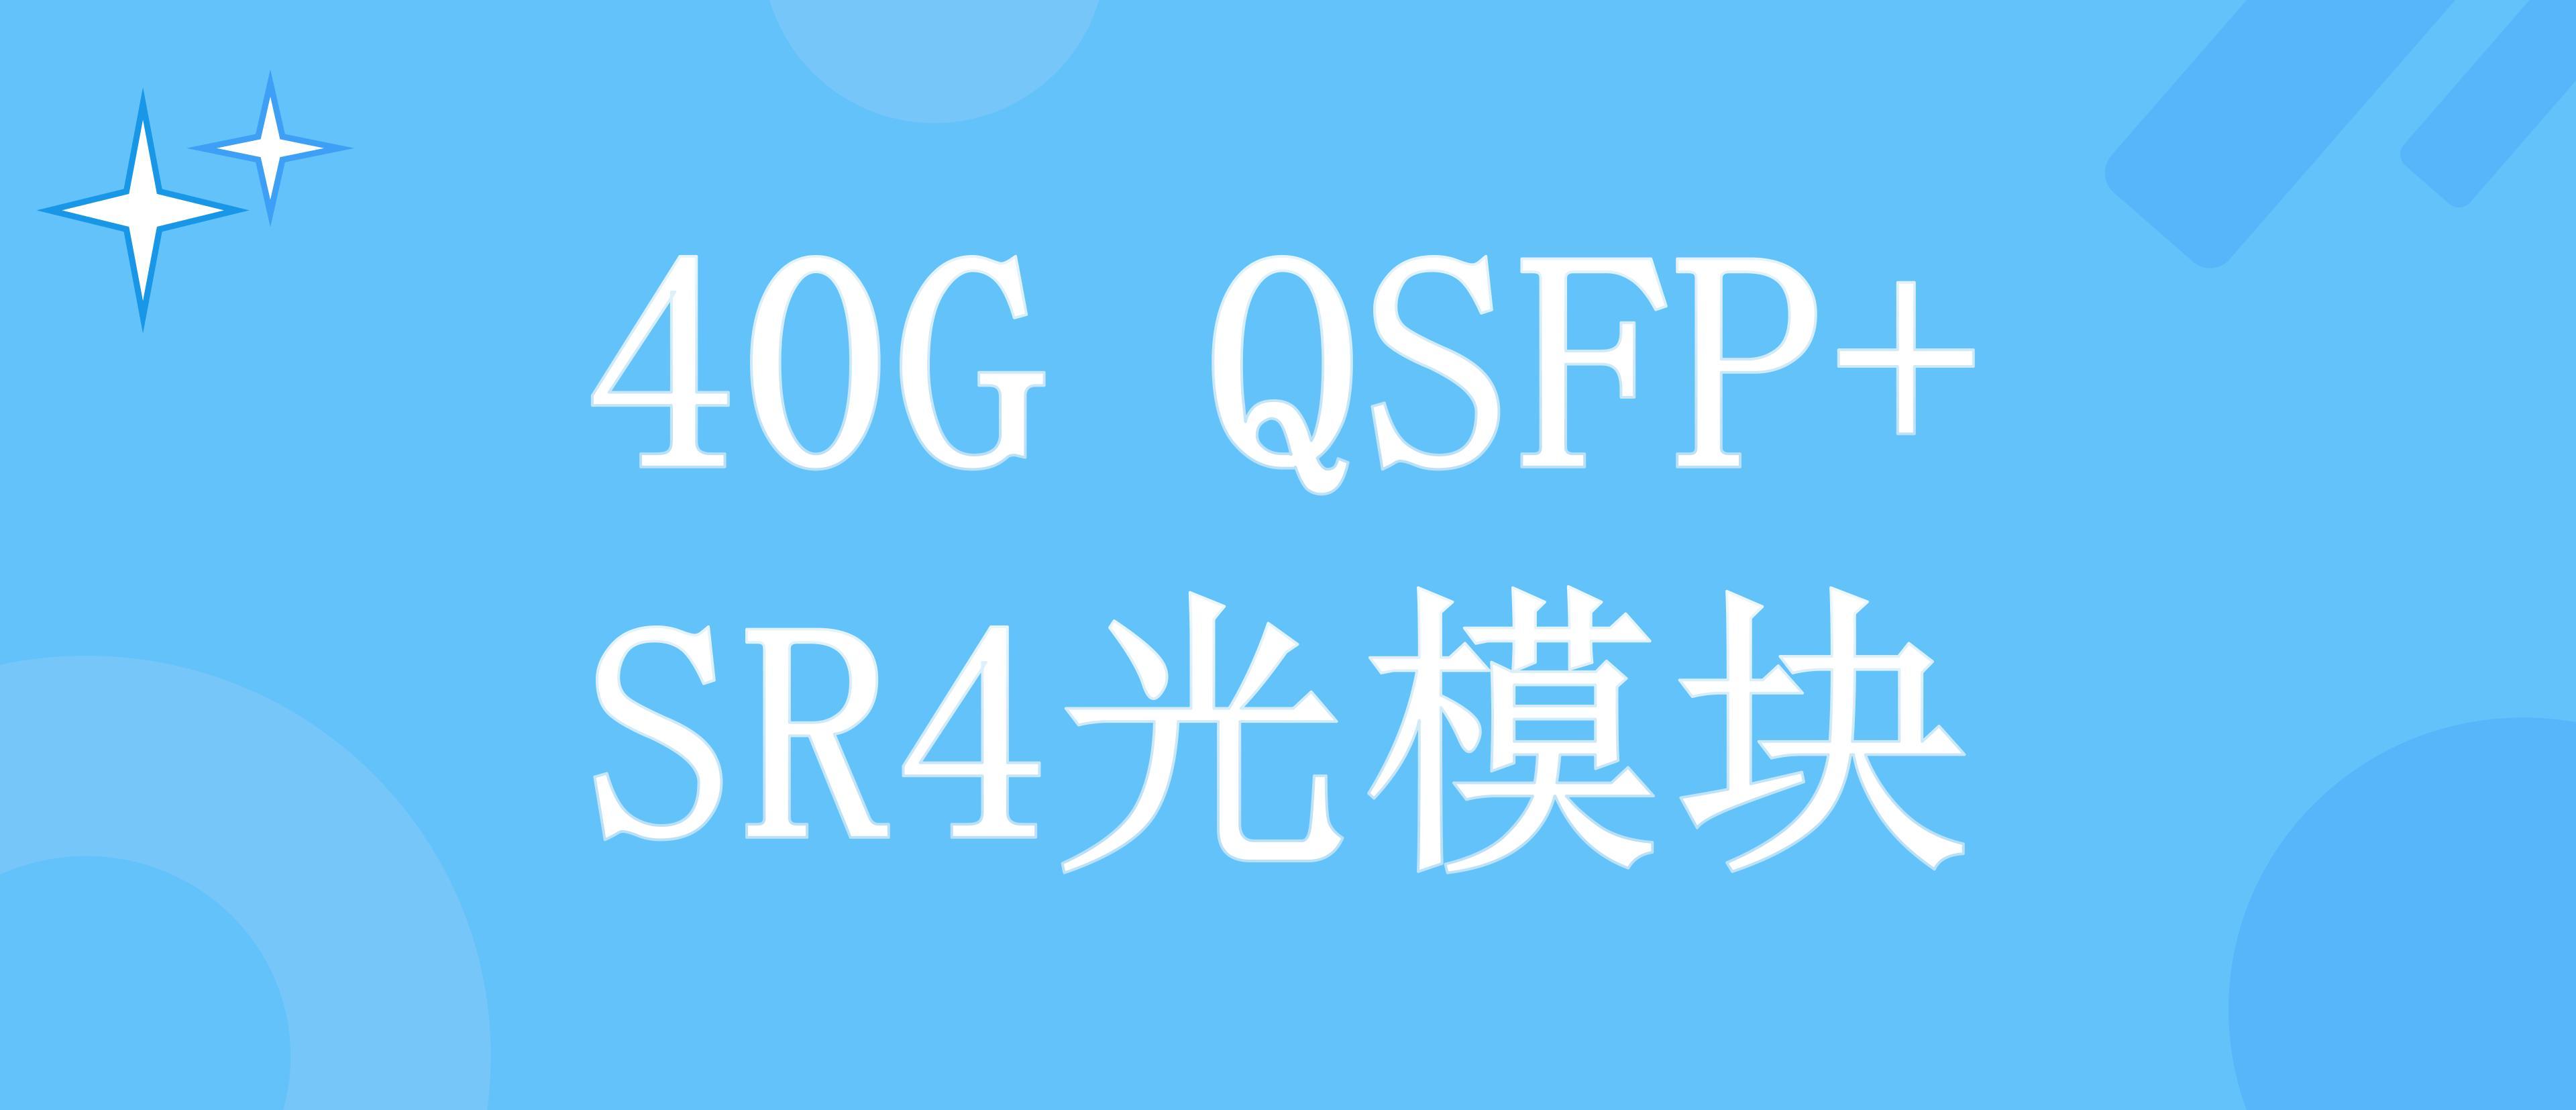 超详细的40G QSFP+ SR4光模块介绍